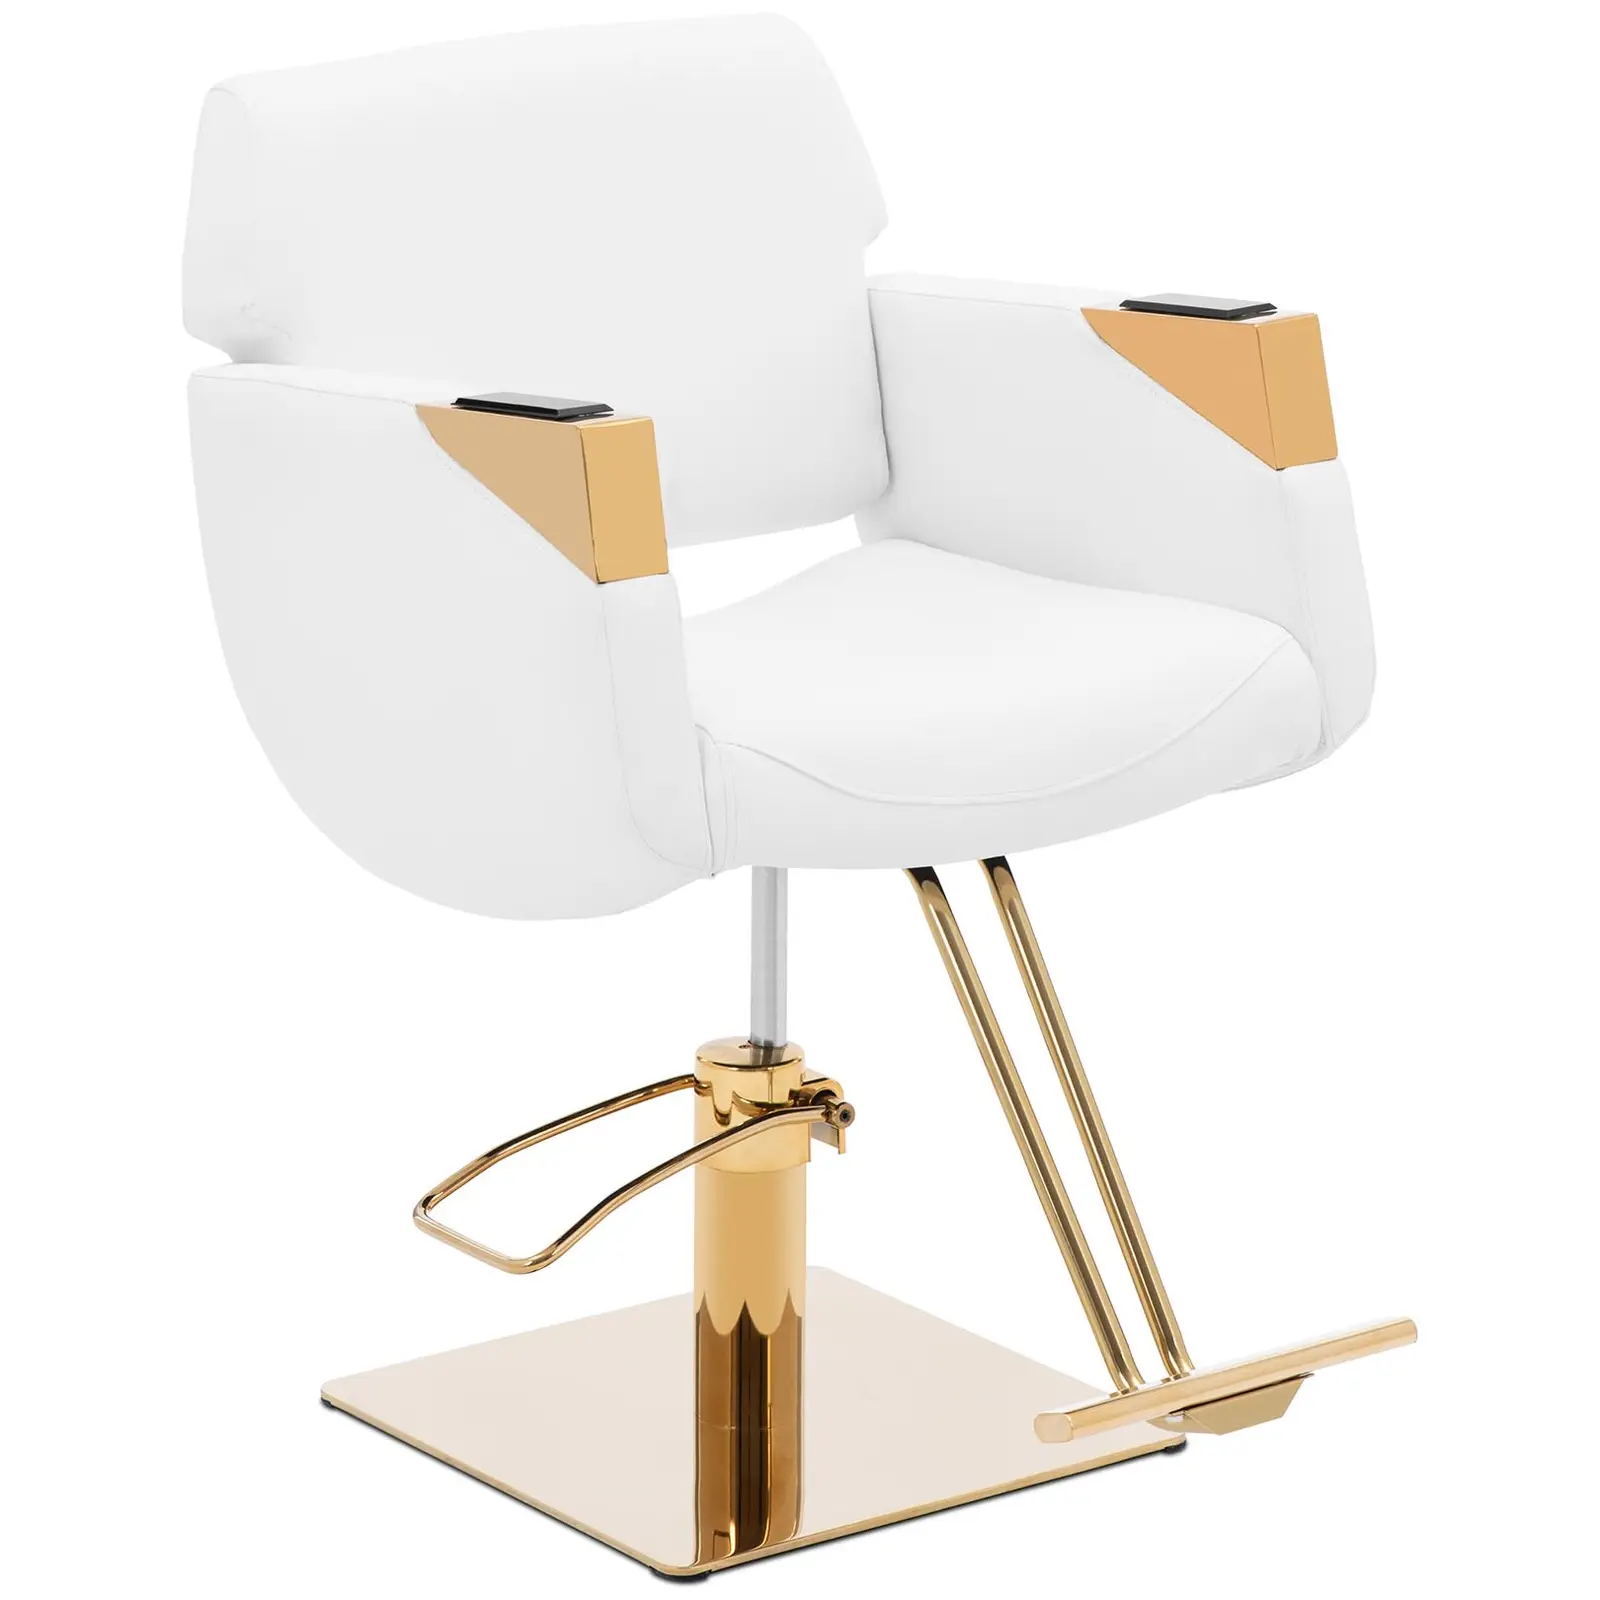 Fodrász szék lábtartóval - 880–1030 - max. 200 kg - fehér / arany